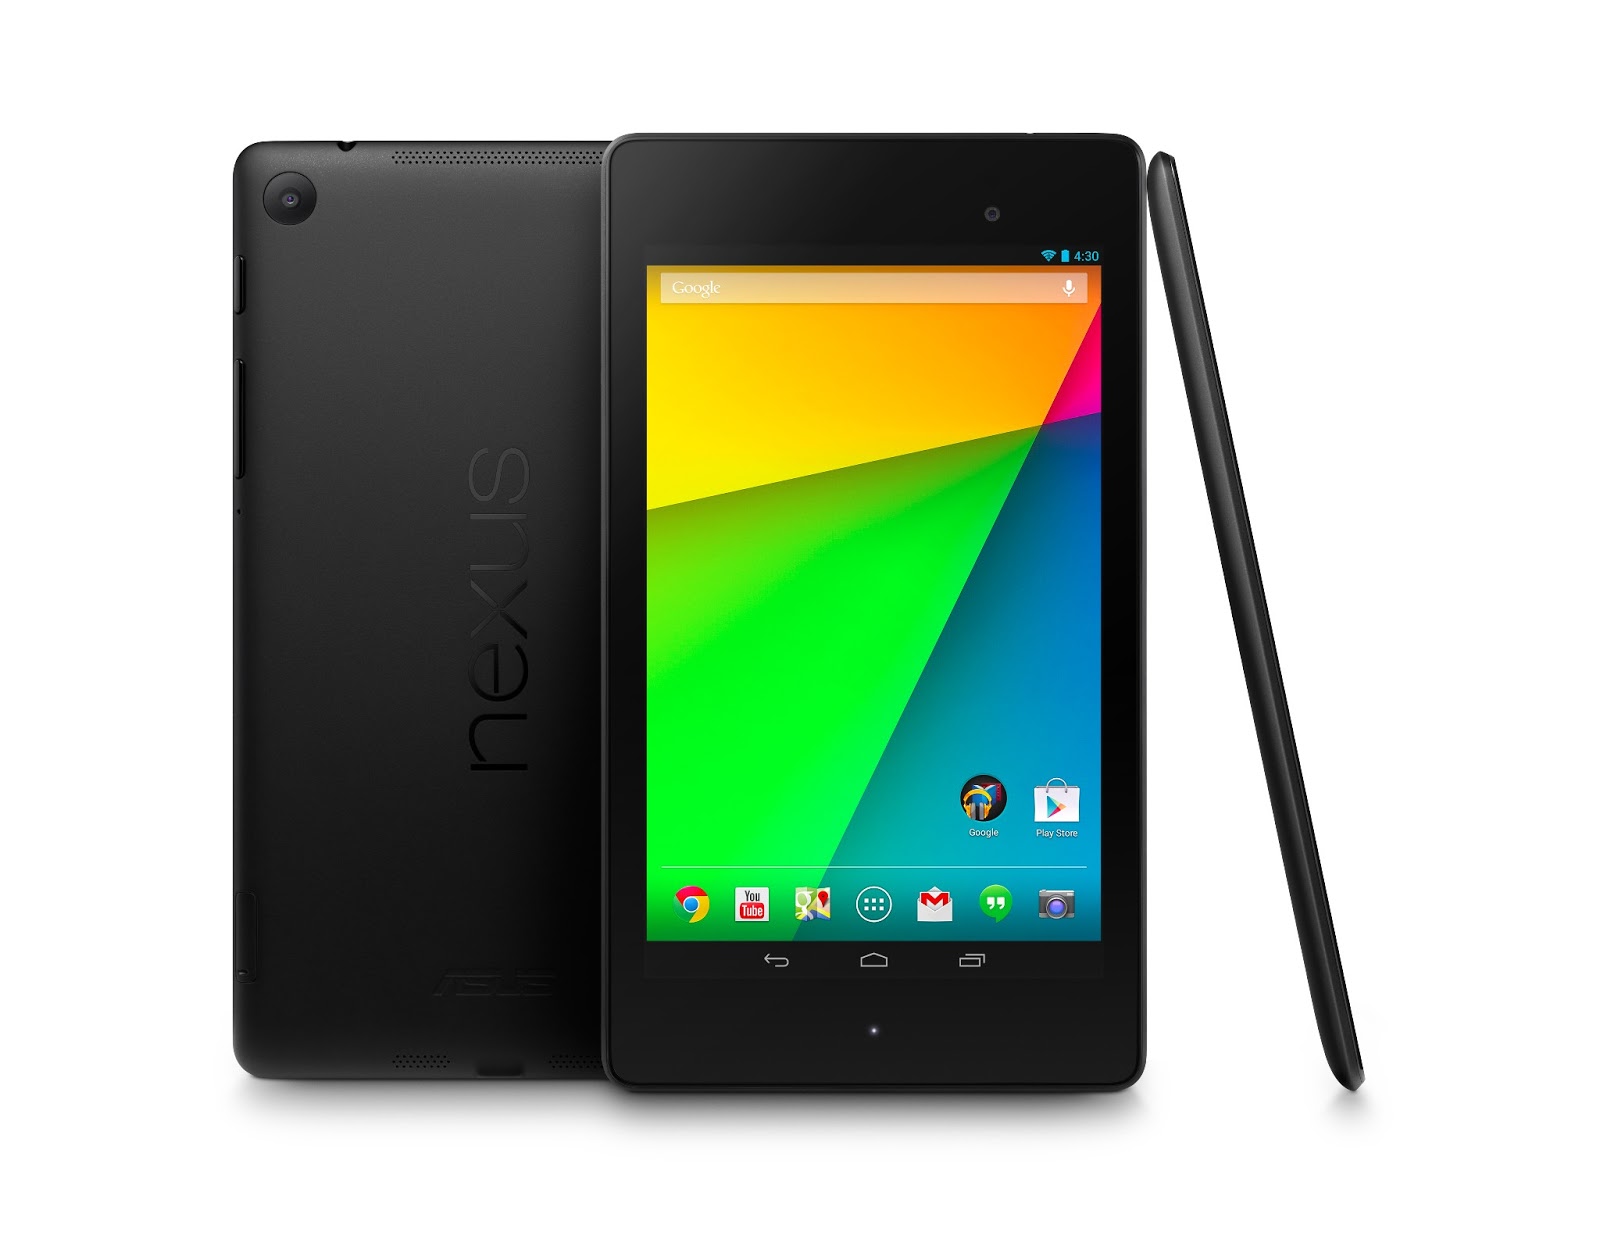 Nexus 7 Wi-Fiモデル 16GB ME571-16G [2013] : タブレットの選び方・おすすめ - NAVER まとめ